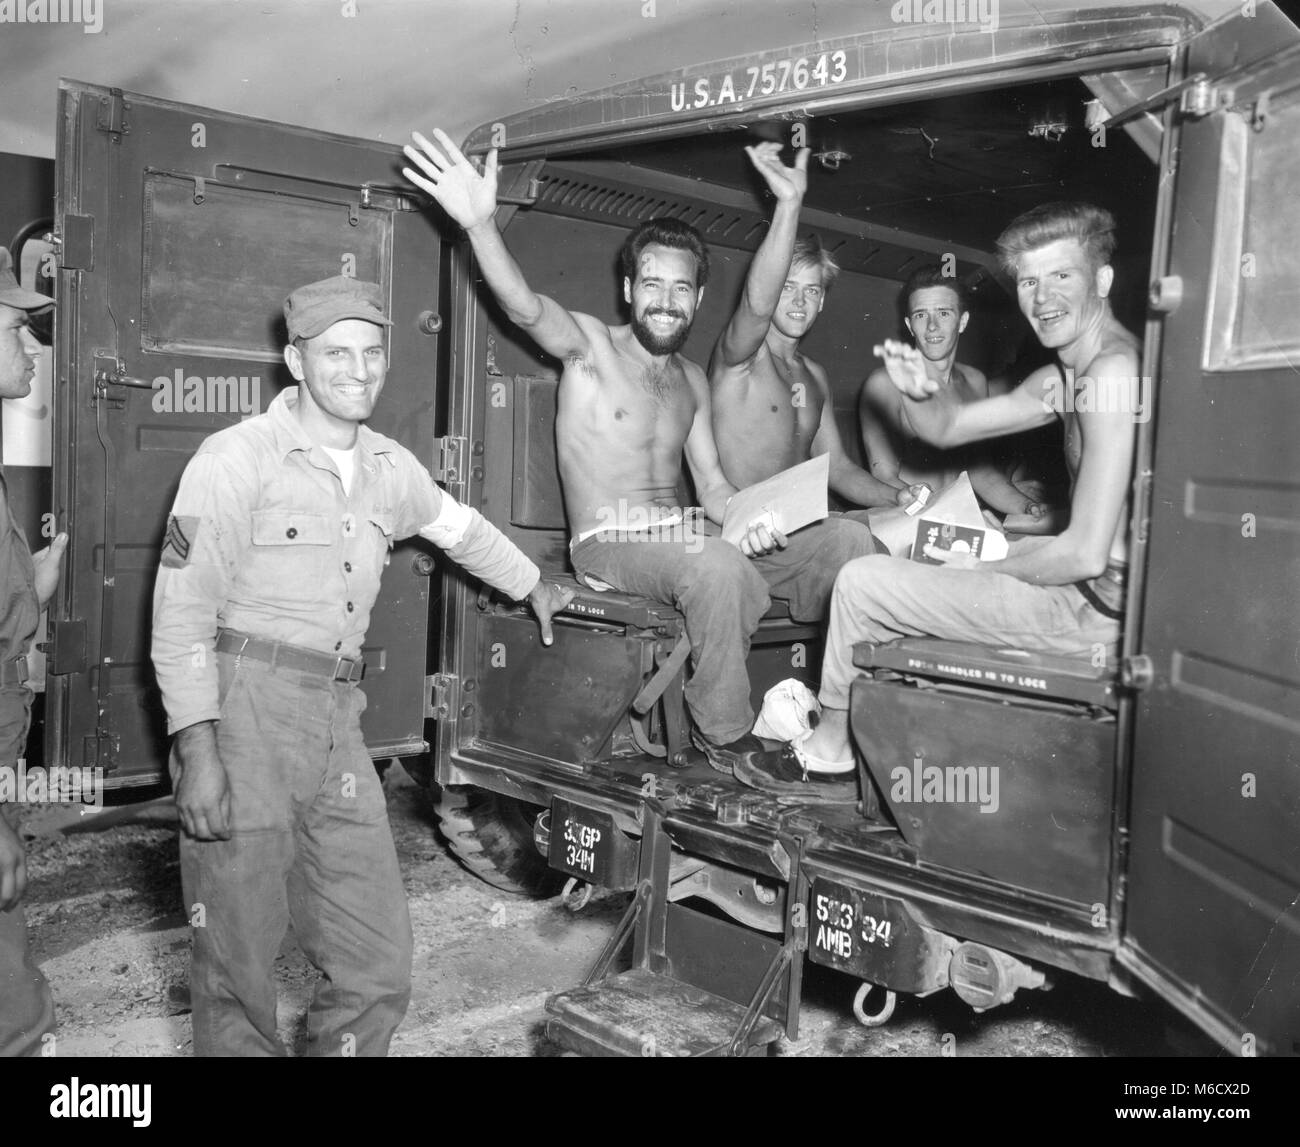 Jubilosos, repatrió a prisioneros de guerra americanos ola felizmente mientras esperan su salida en ambulancia a un centro de procesamiento en la primera etapa de su viaje a casa. Panmunjom, Corea, Sept 4. 1953. Ejército de EE.UU. Foto de stock